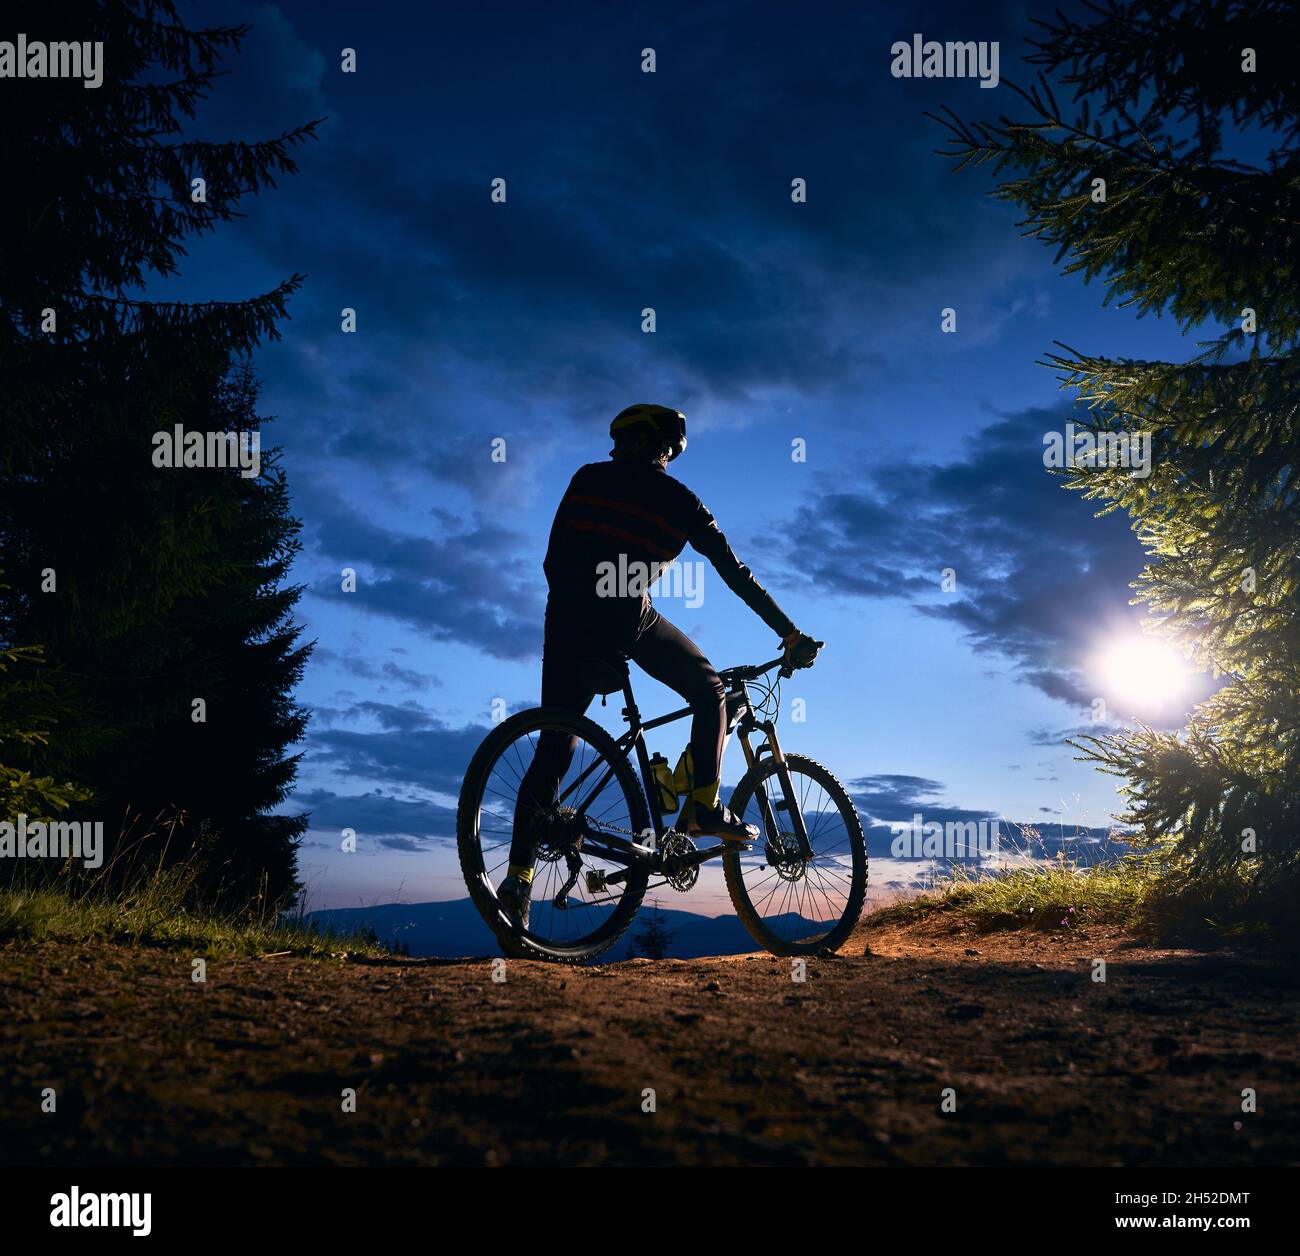 Rückansicht des Mannes, der auf dem Fahrrad unter blauem Abendhimmel mit Wolken sitzt. Silhouette des männlichen Radfahrers Fahrrad auf dem Weg in der Nacht Bergwald. Konzept von Sport, Radfahren und aktiver Freizeit. Stockfoto